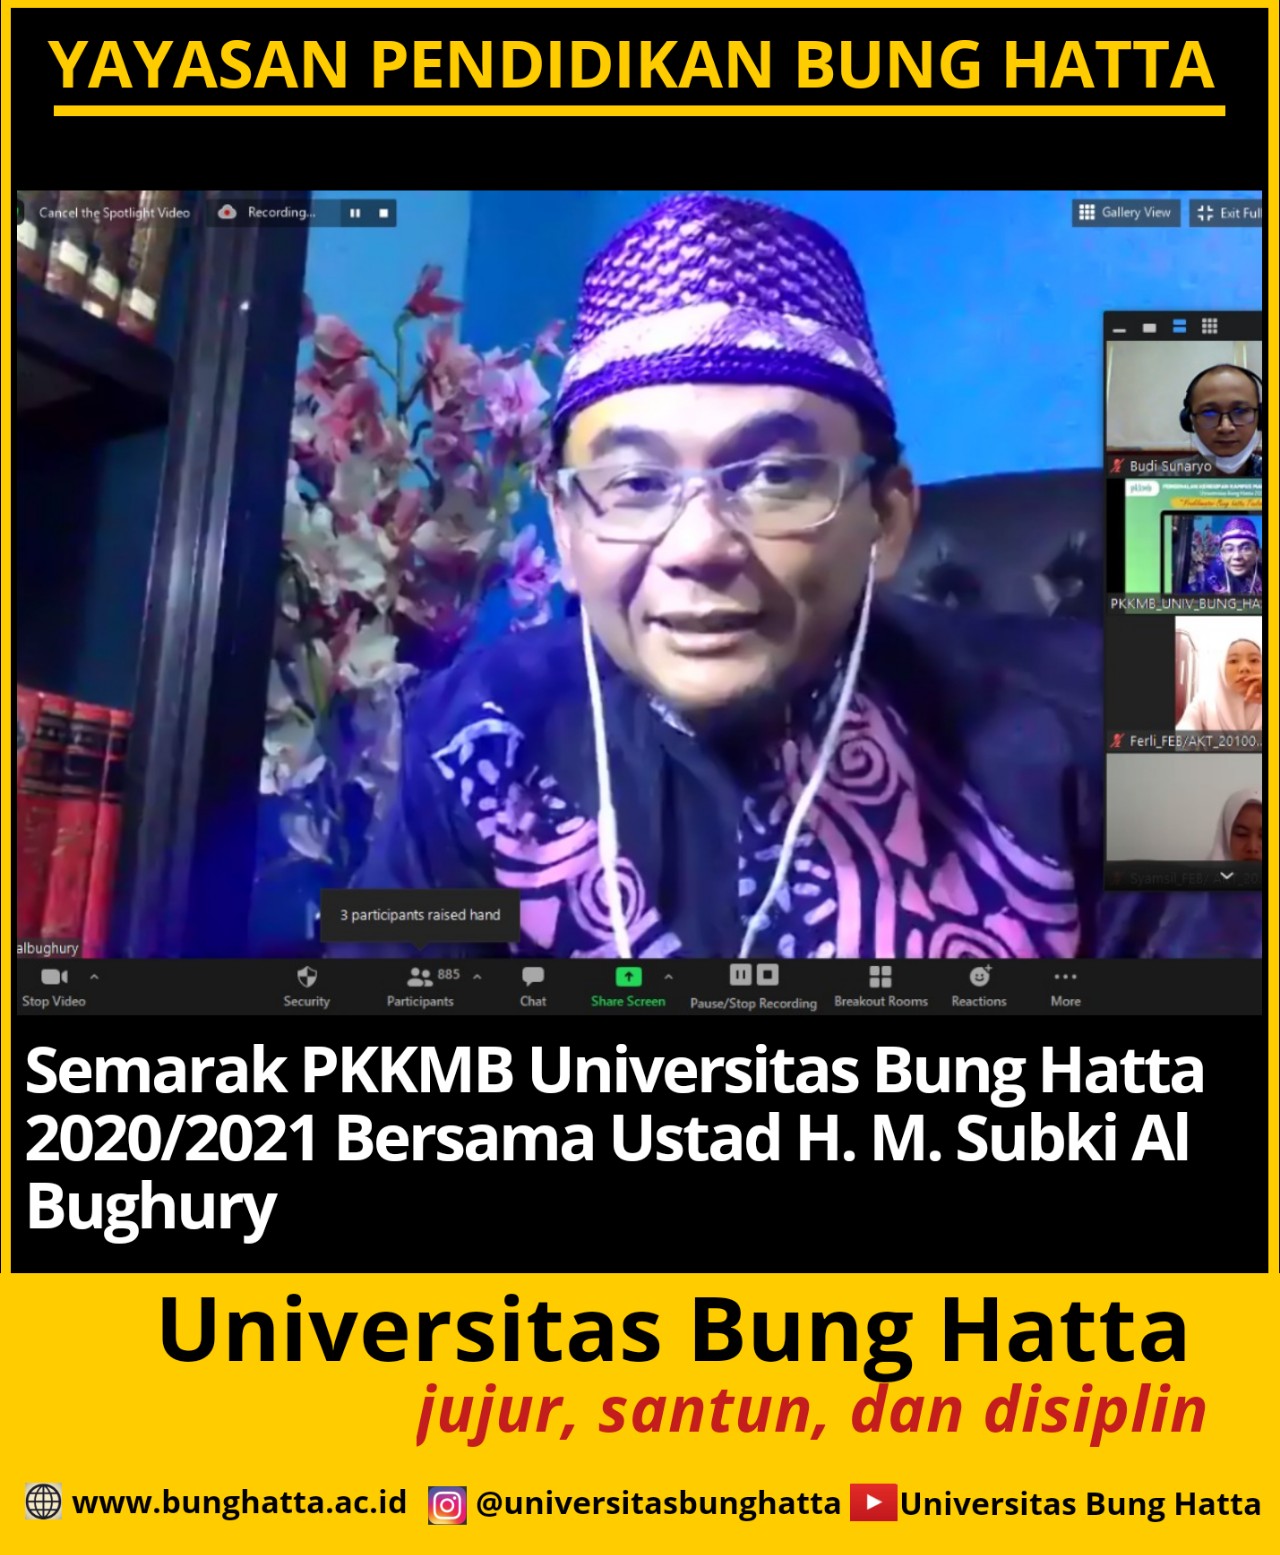 Ustad H. M. Subki Al Bughury Beri Pembekalan kepada Mahasiswa Baru Universitas Bung Hatta